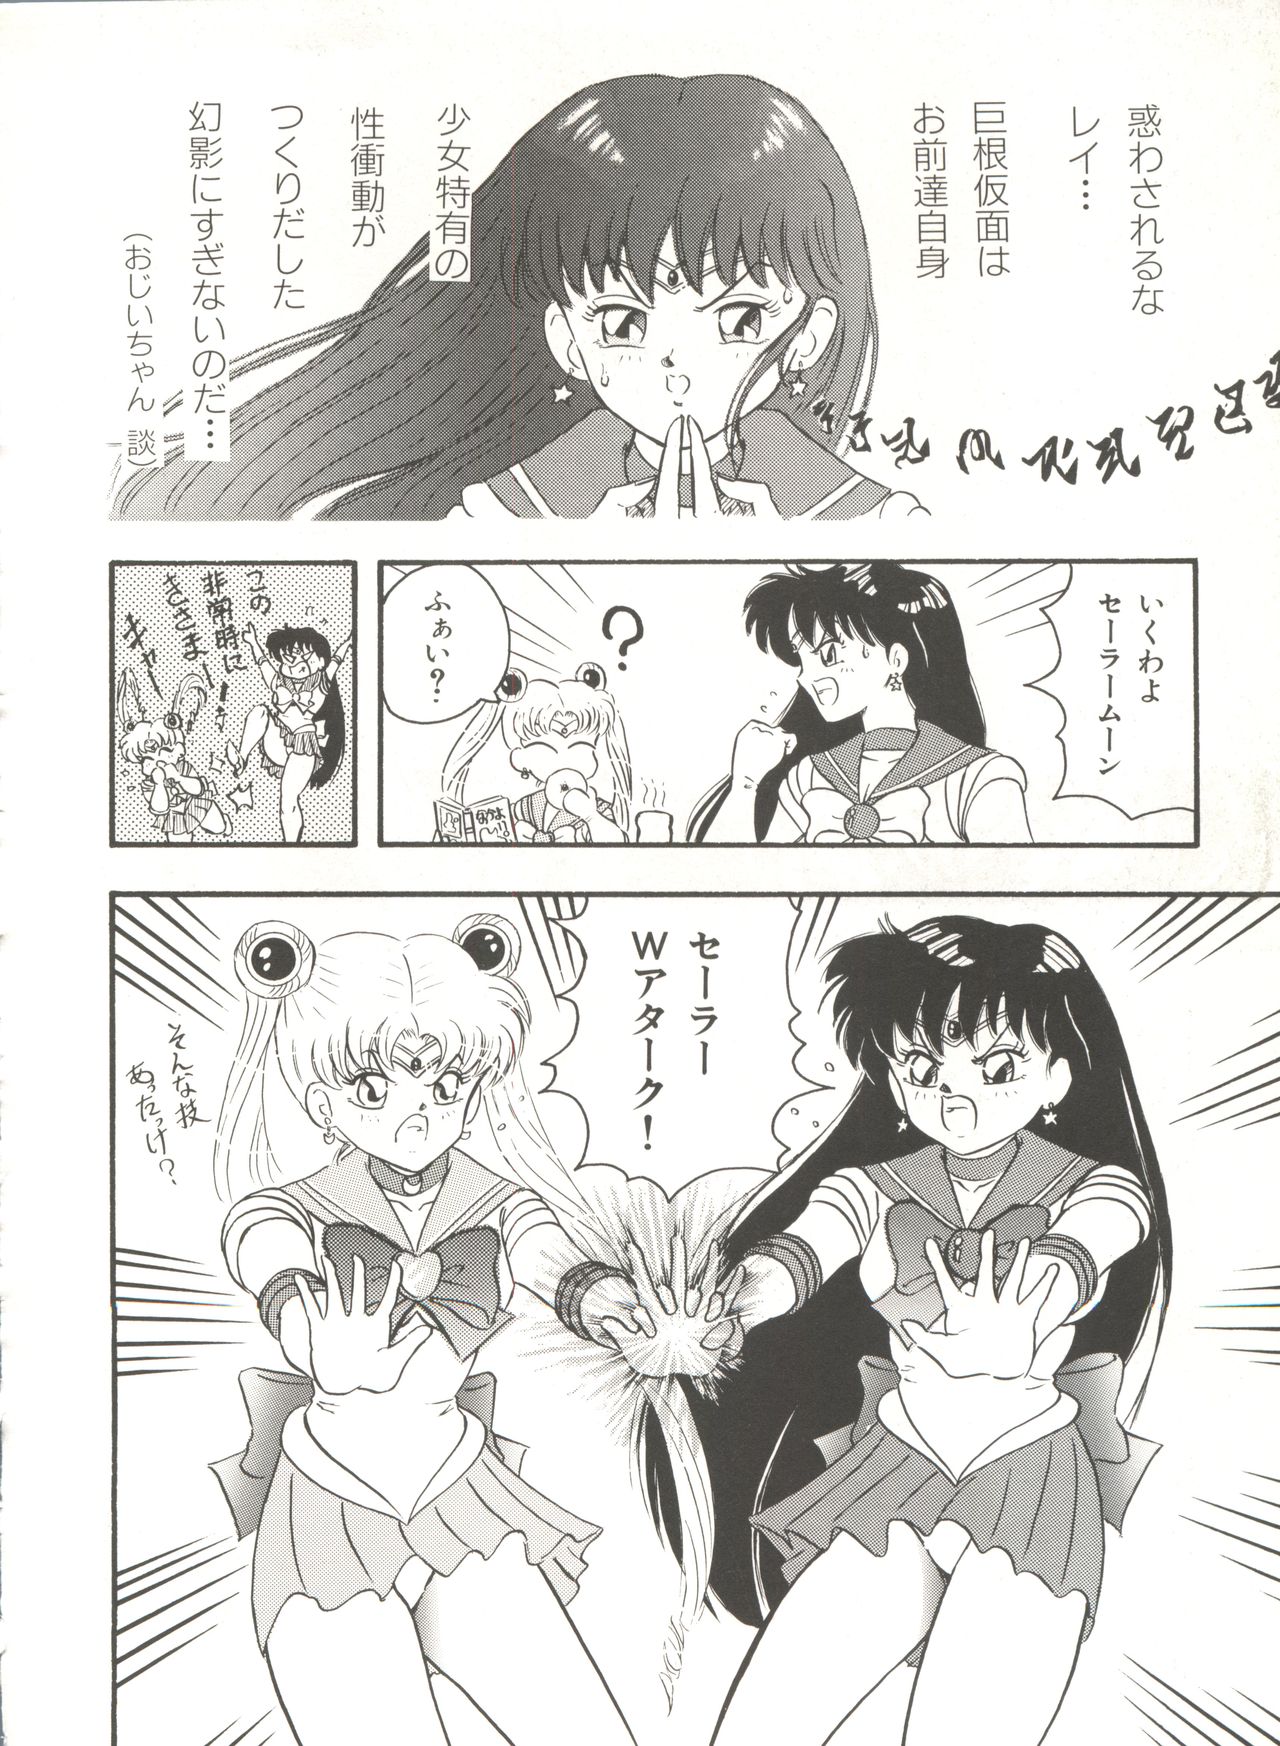 [Anthology] Bishoujo Doujinshi Anthology 16 - Moon Paradise 10 Tsuki no Rakuen (Bishoujo Senshi Sailor Moon) page 33 full